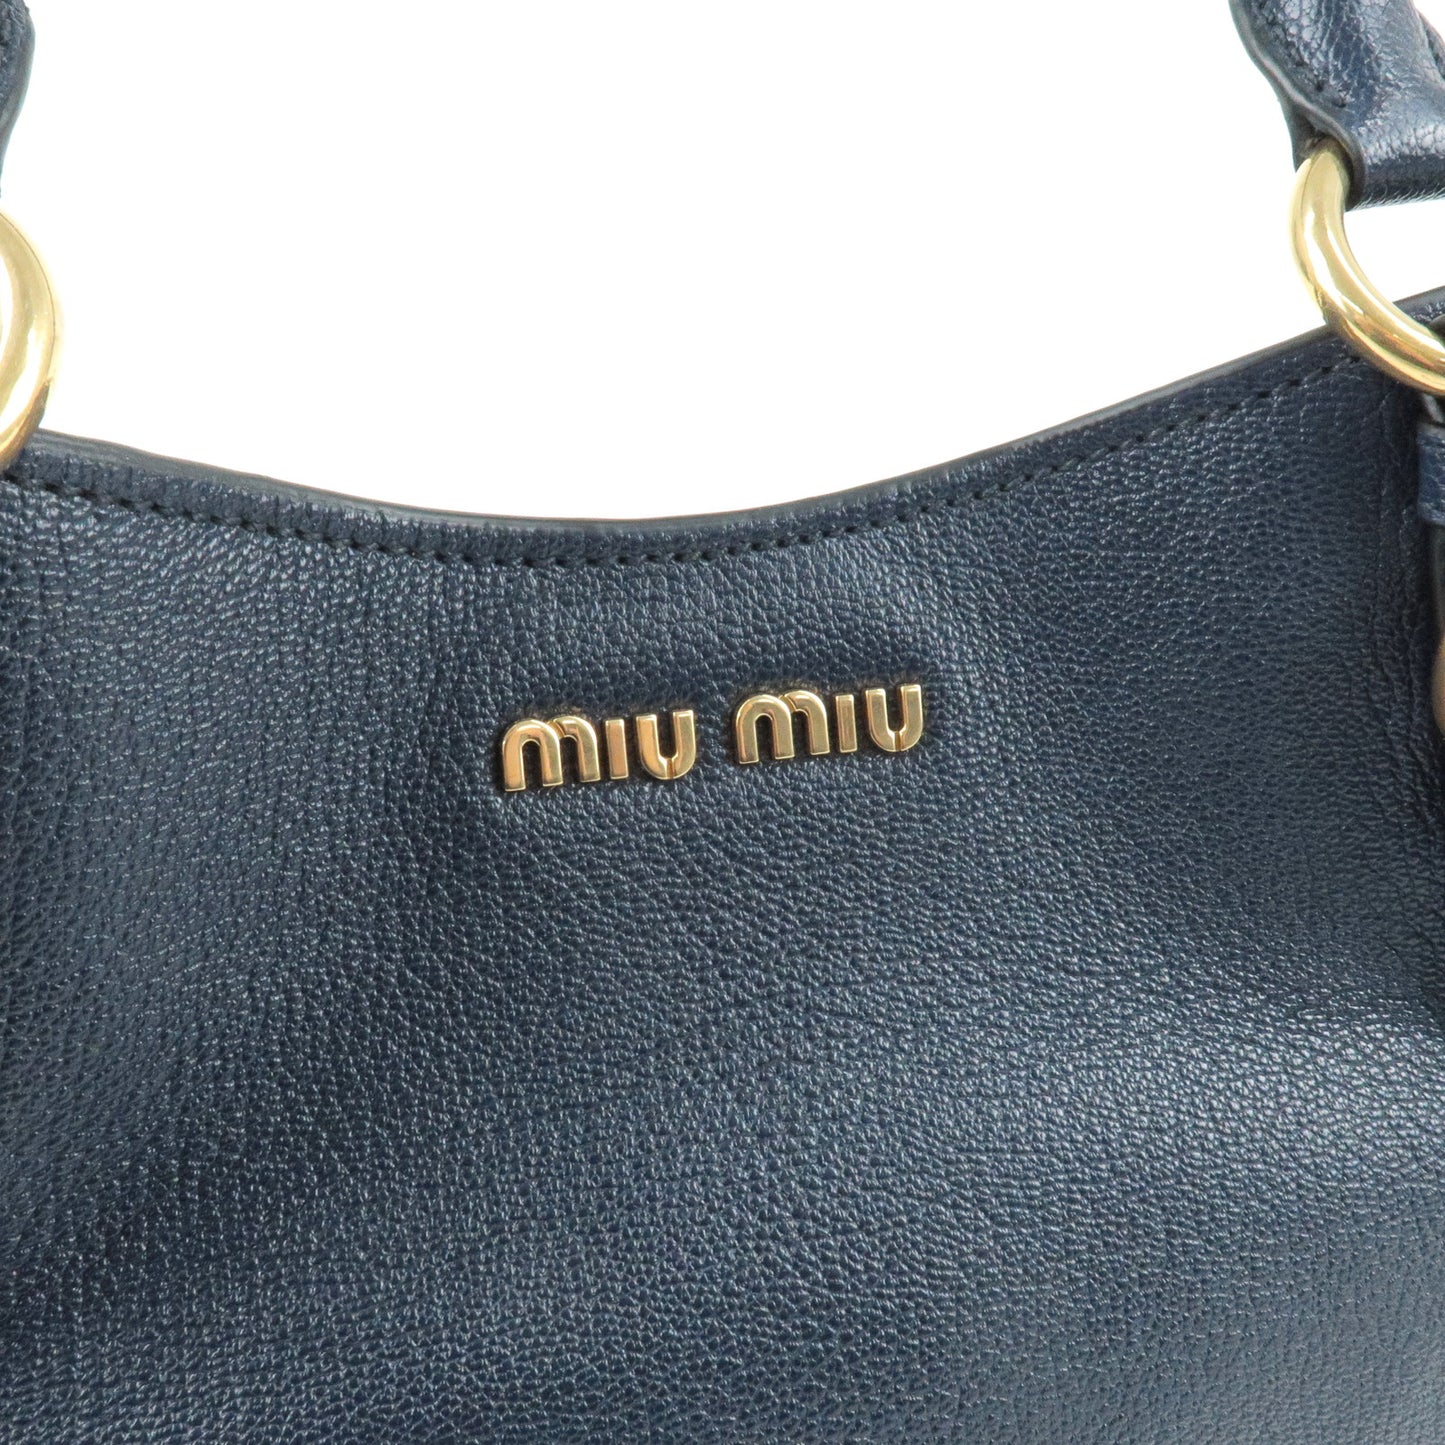 MIU MIU Madras Leather 2Way Hand Bag Shoulder Bag Navy 5BE886